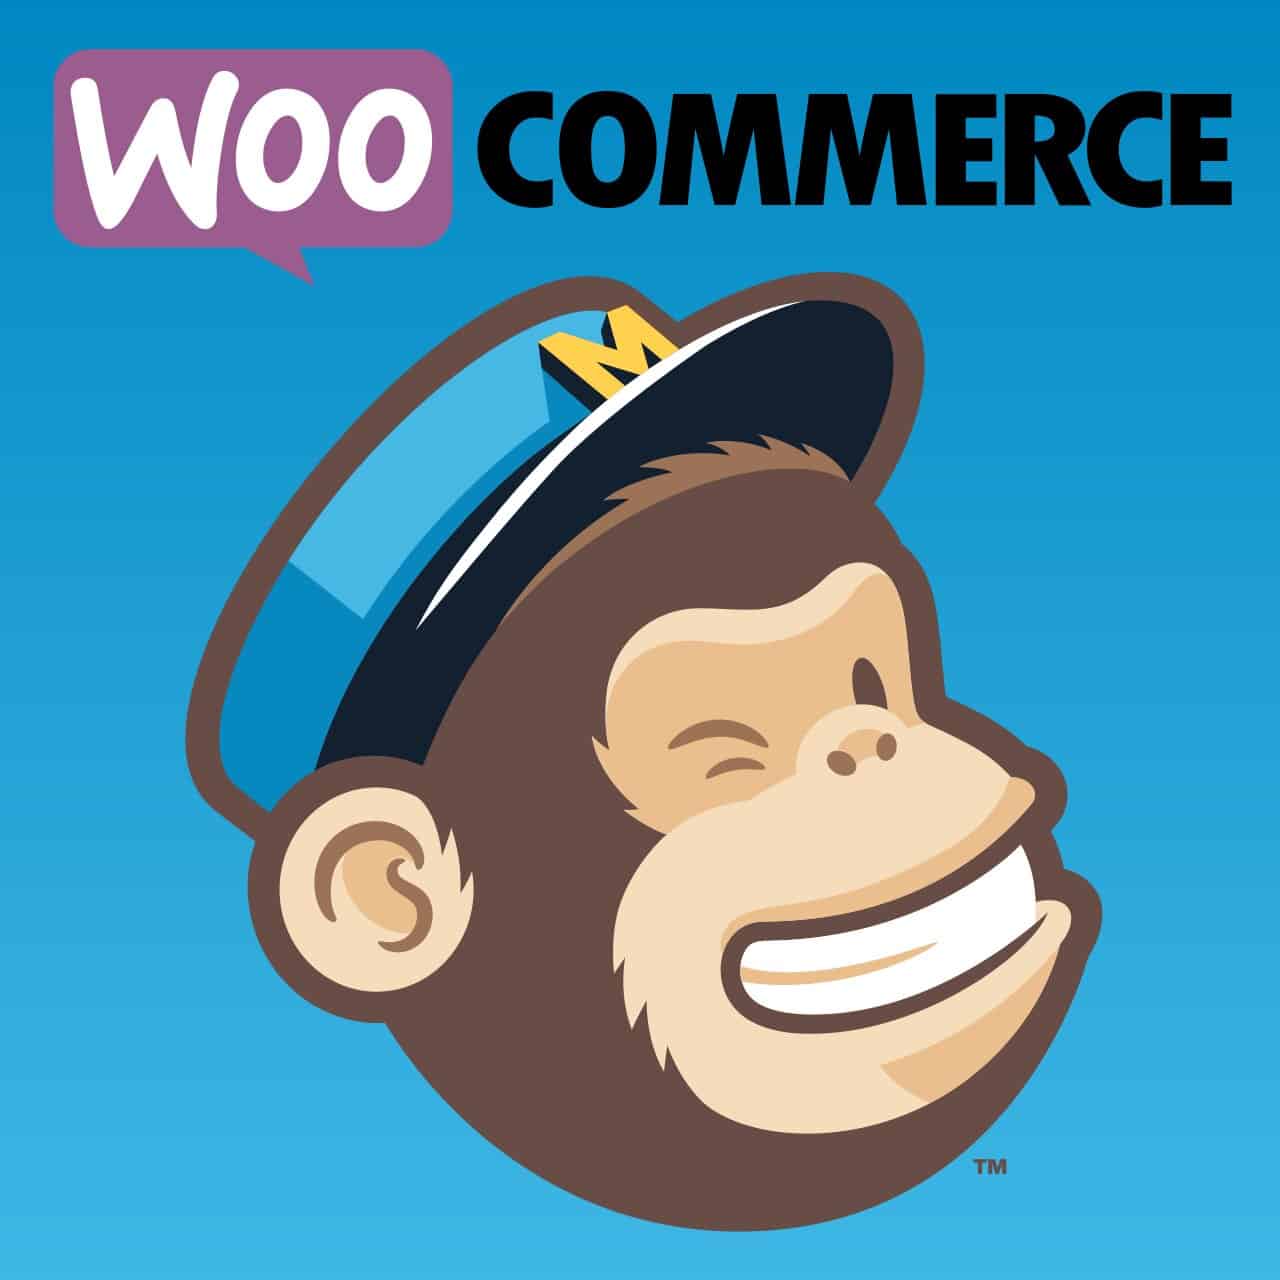 WP WooCommerce Mailchimp